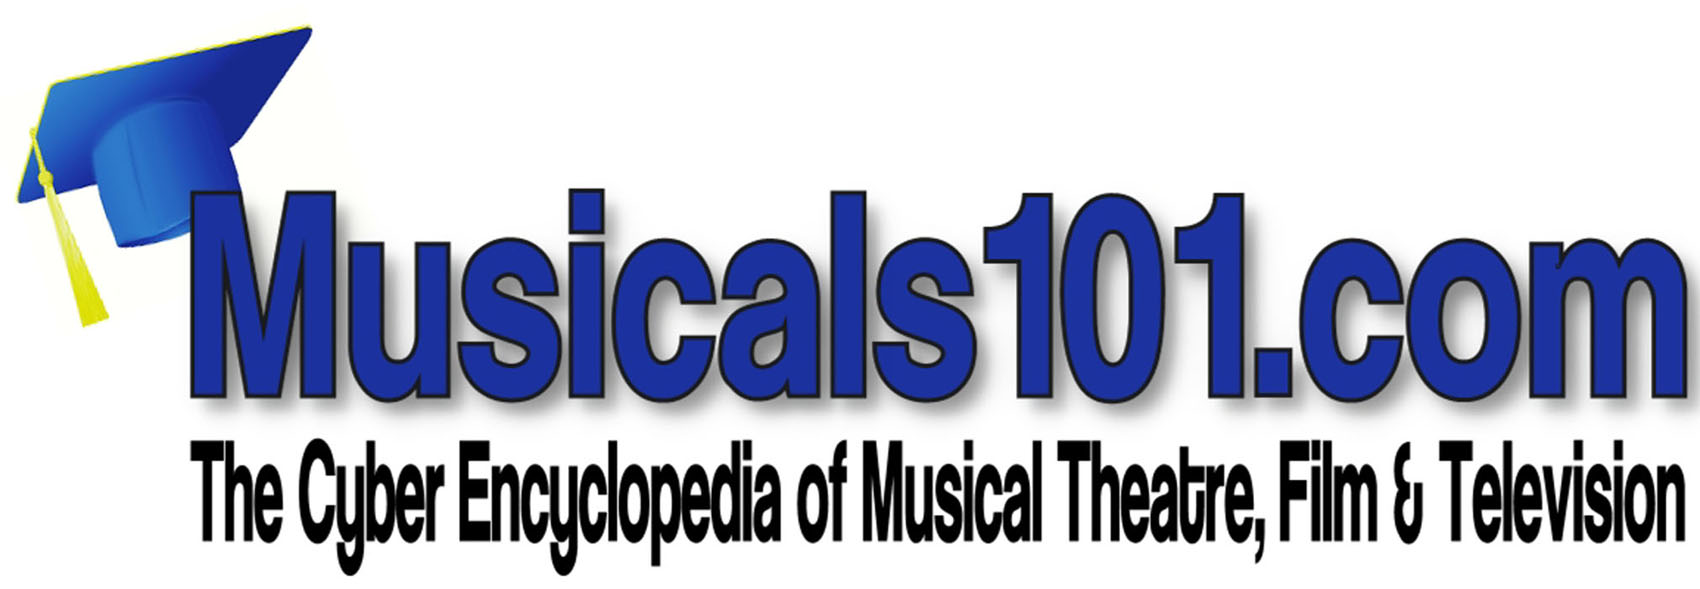 Musicals101logo